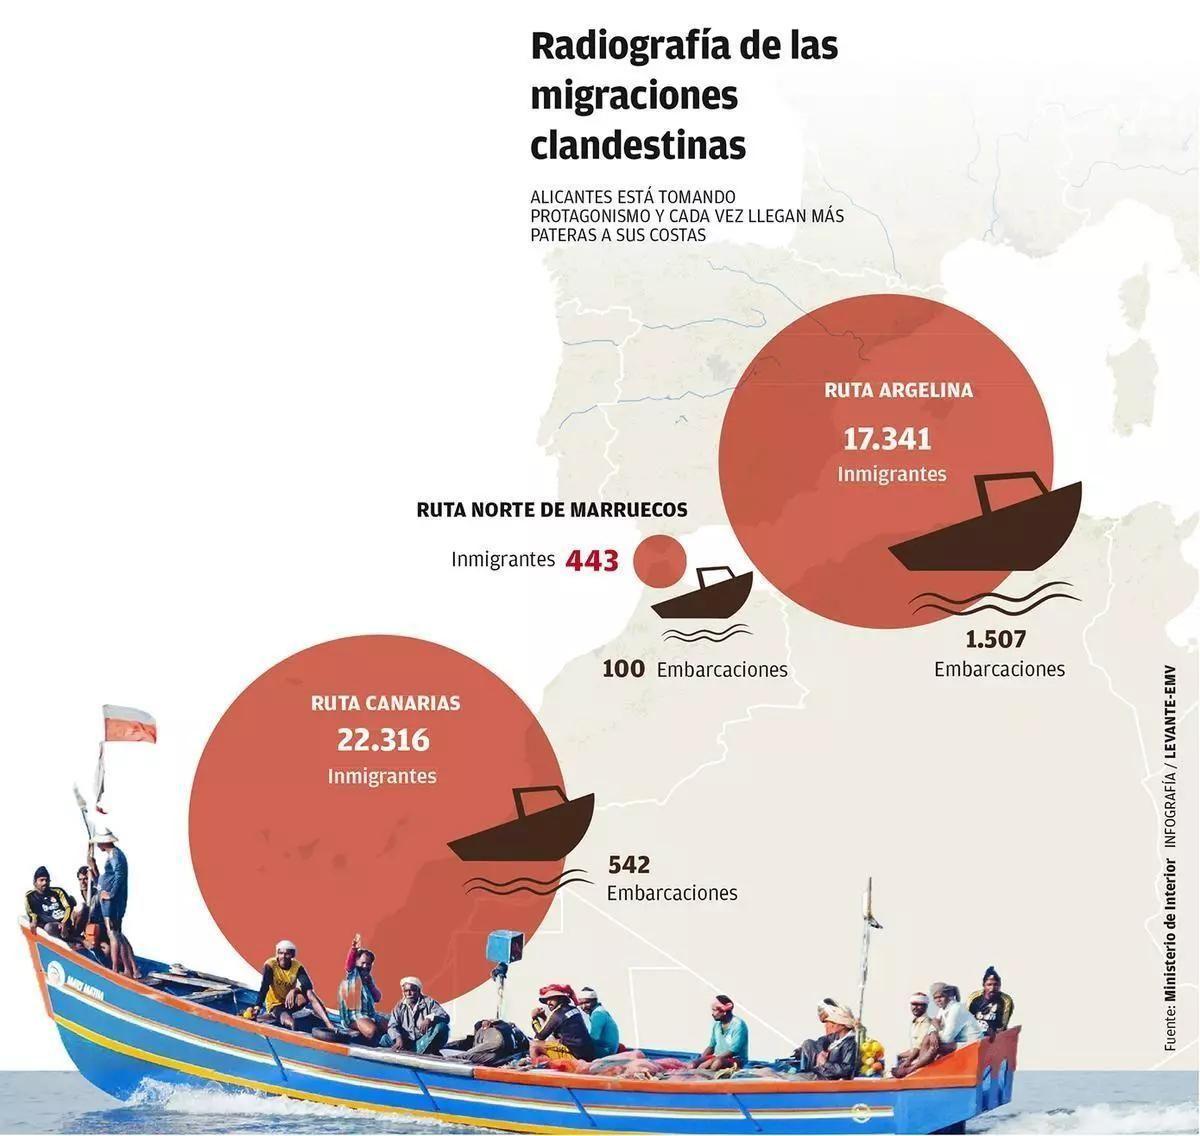 Radiografía de las migraciones clandestinas.